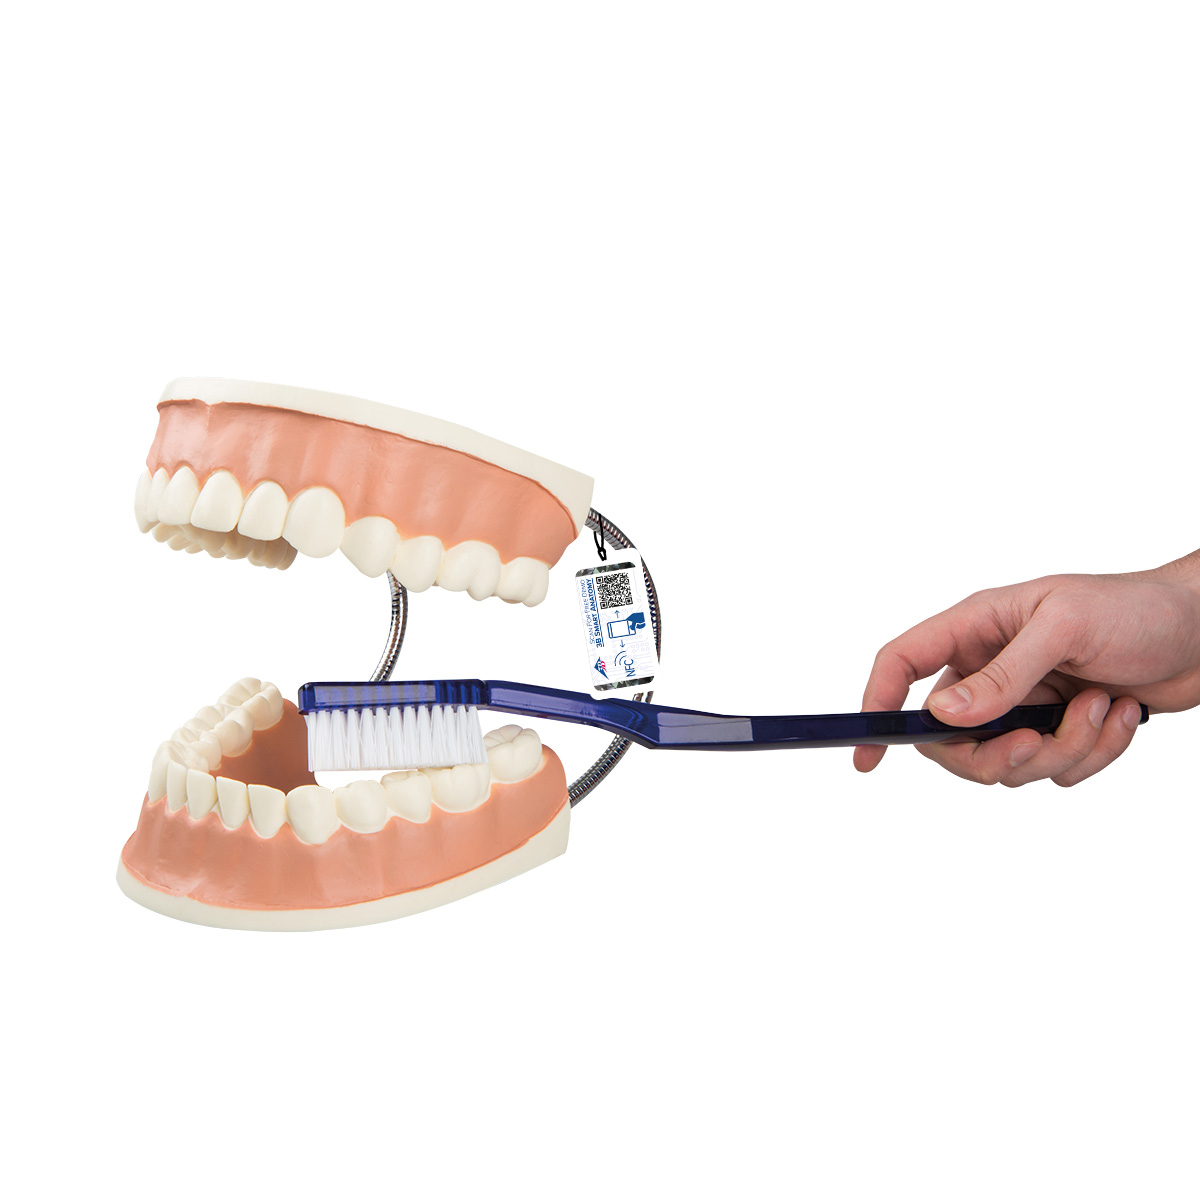 Riesen Zahn Modell zur Zahnpflege, 3-fache Größe - 3B Smart Anatomy, Bestellnummer 1000246, D16, 3B Scientific